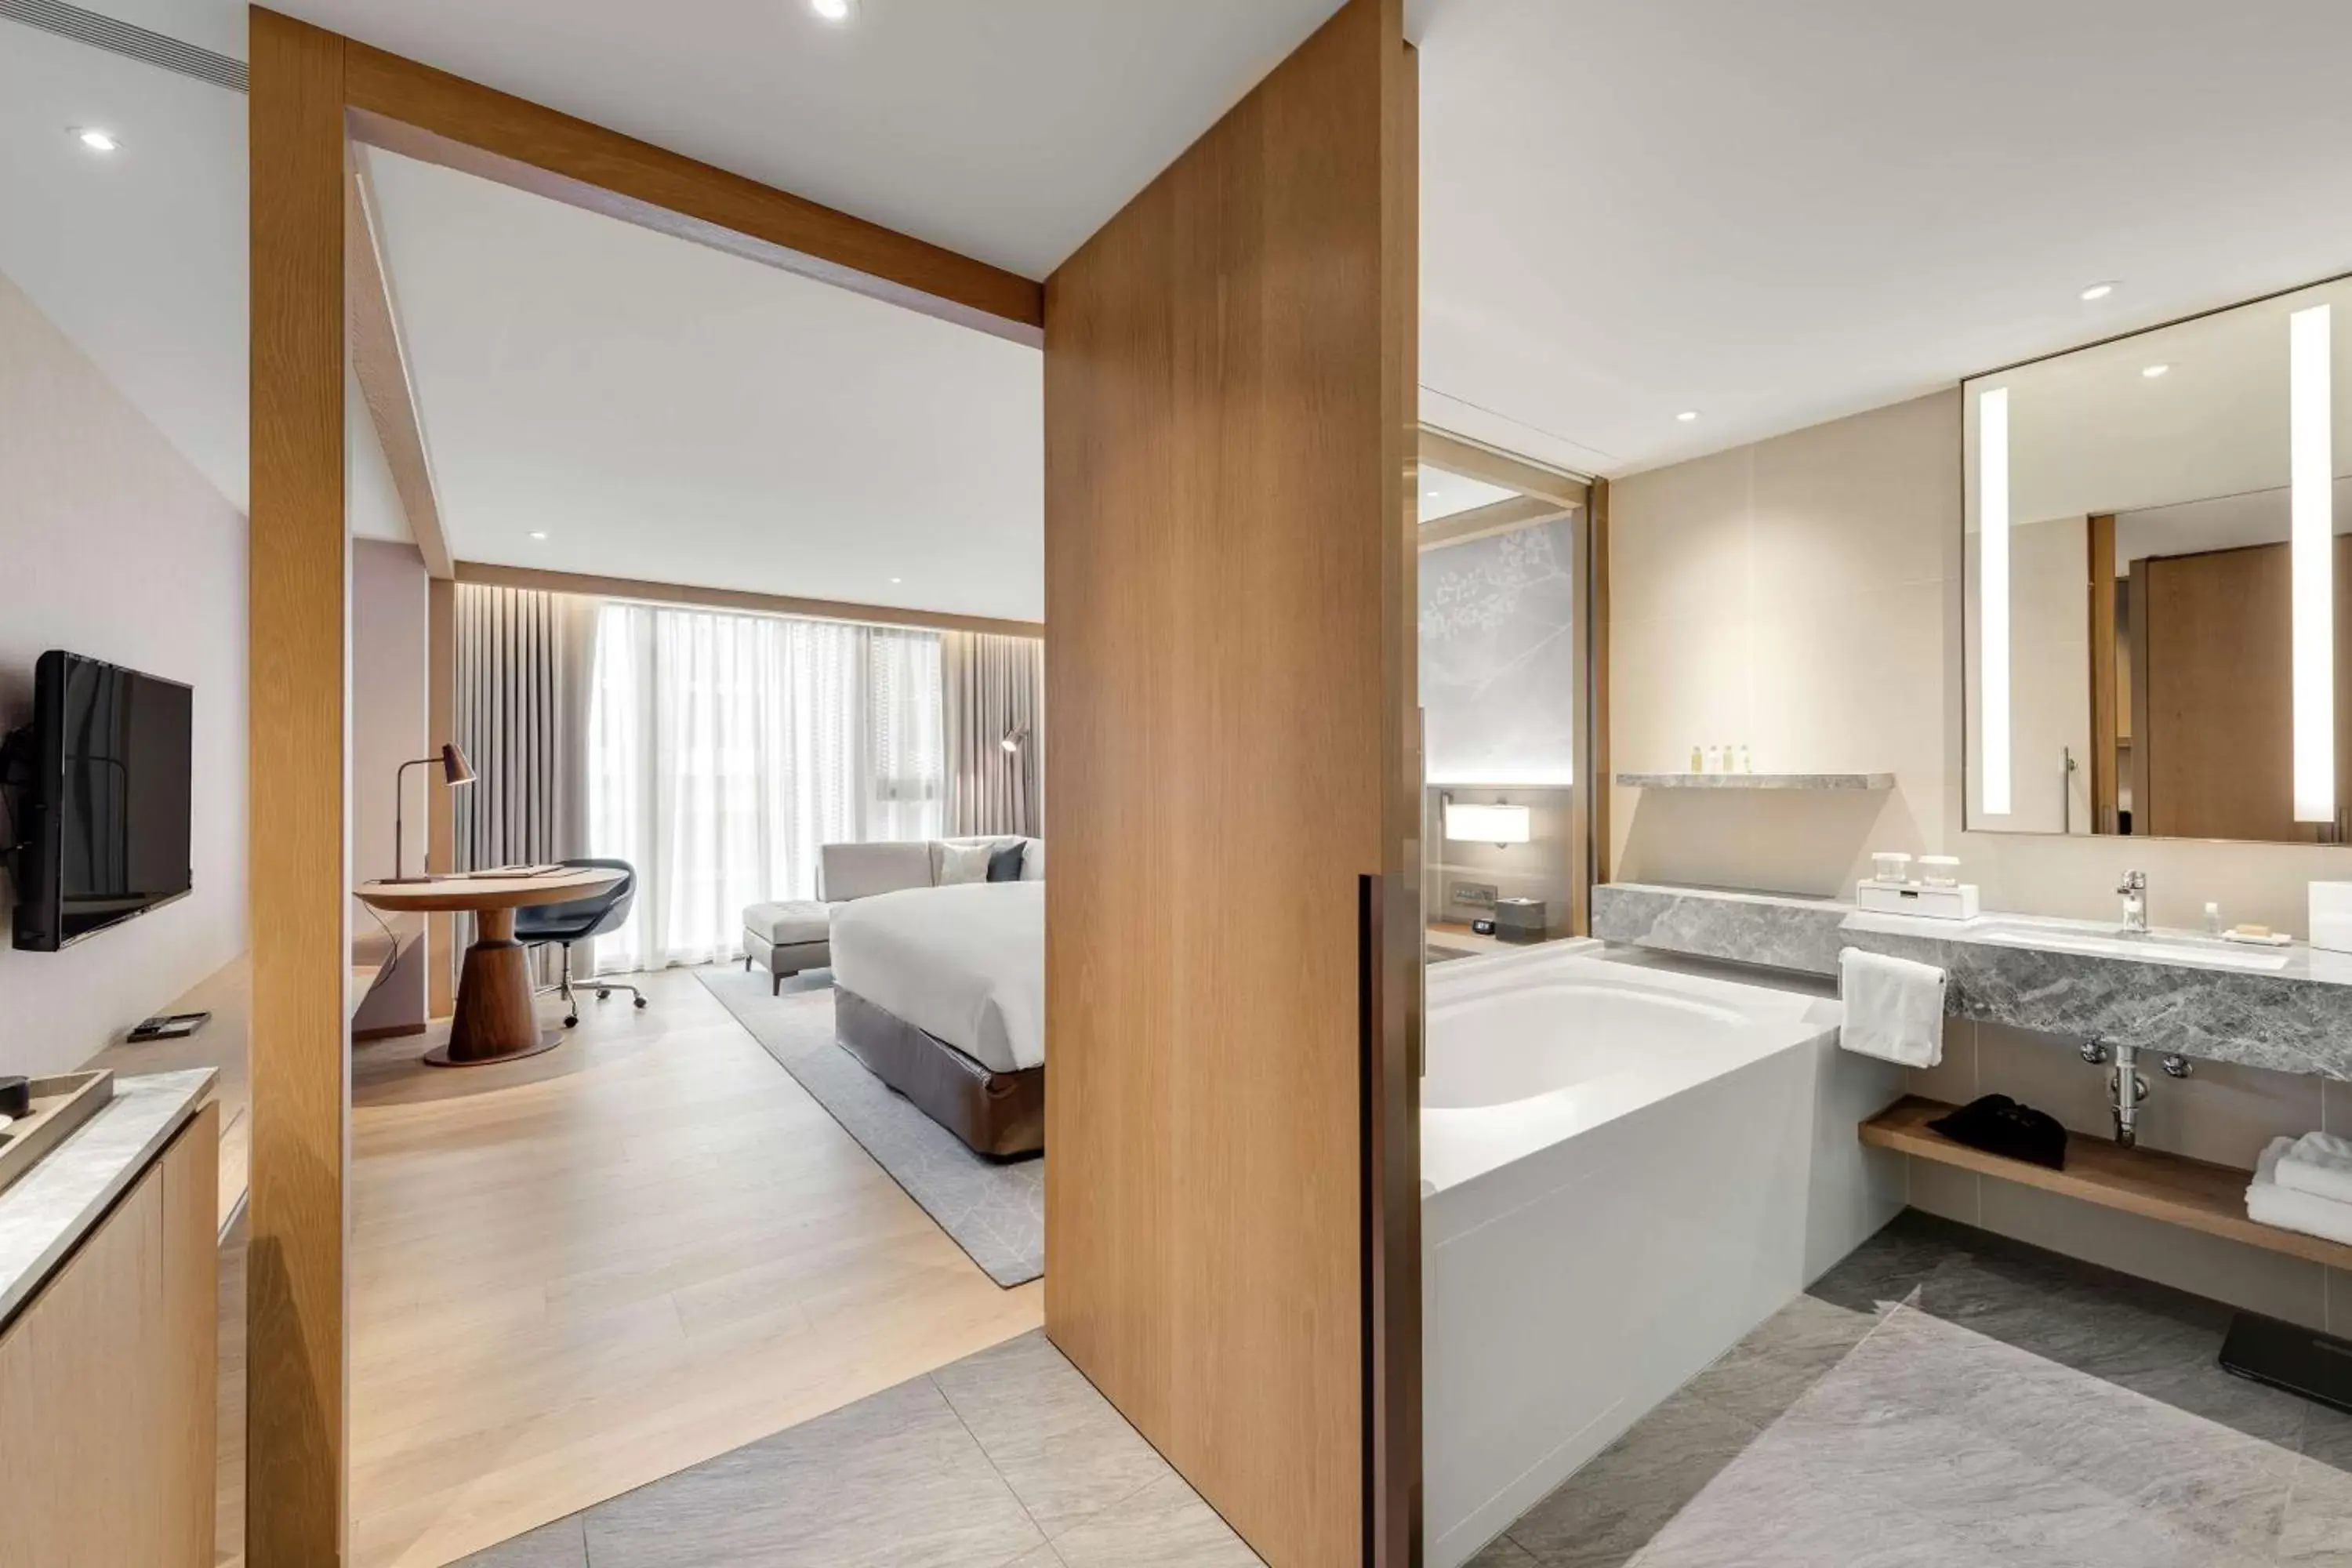 Bedroom, Bathroom in DoubleTree by Hilton Taipei Zhongshan